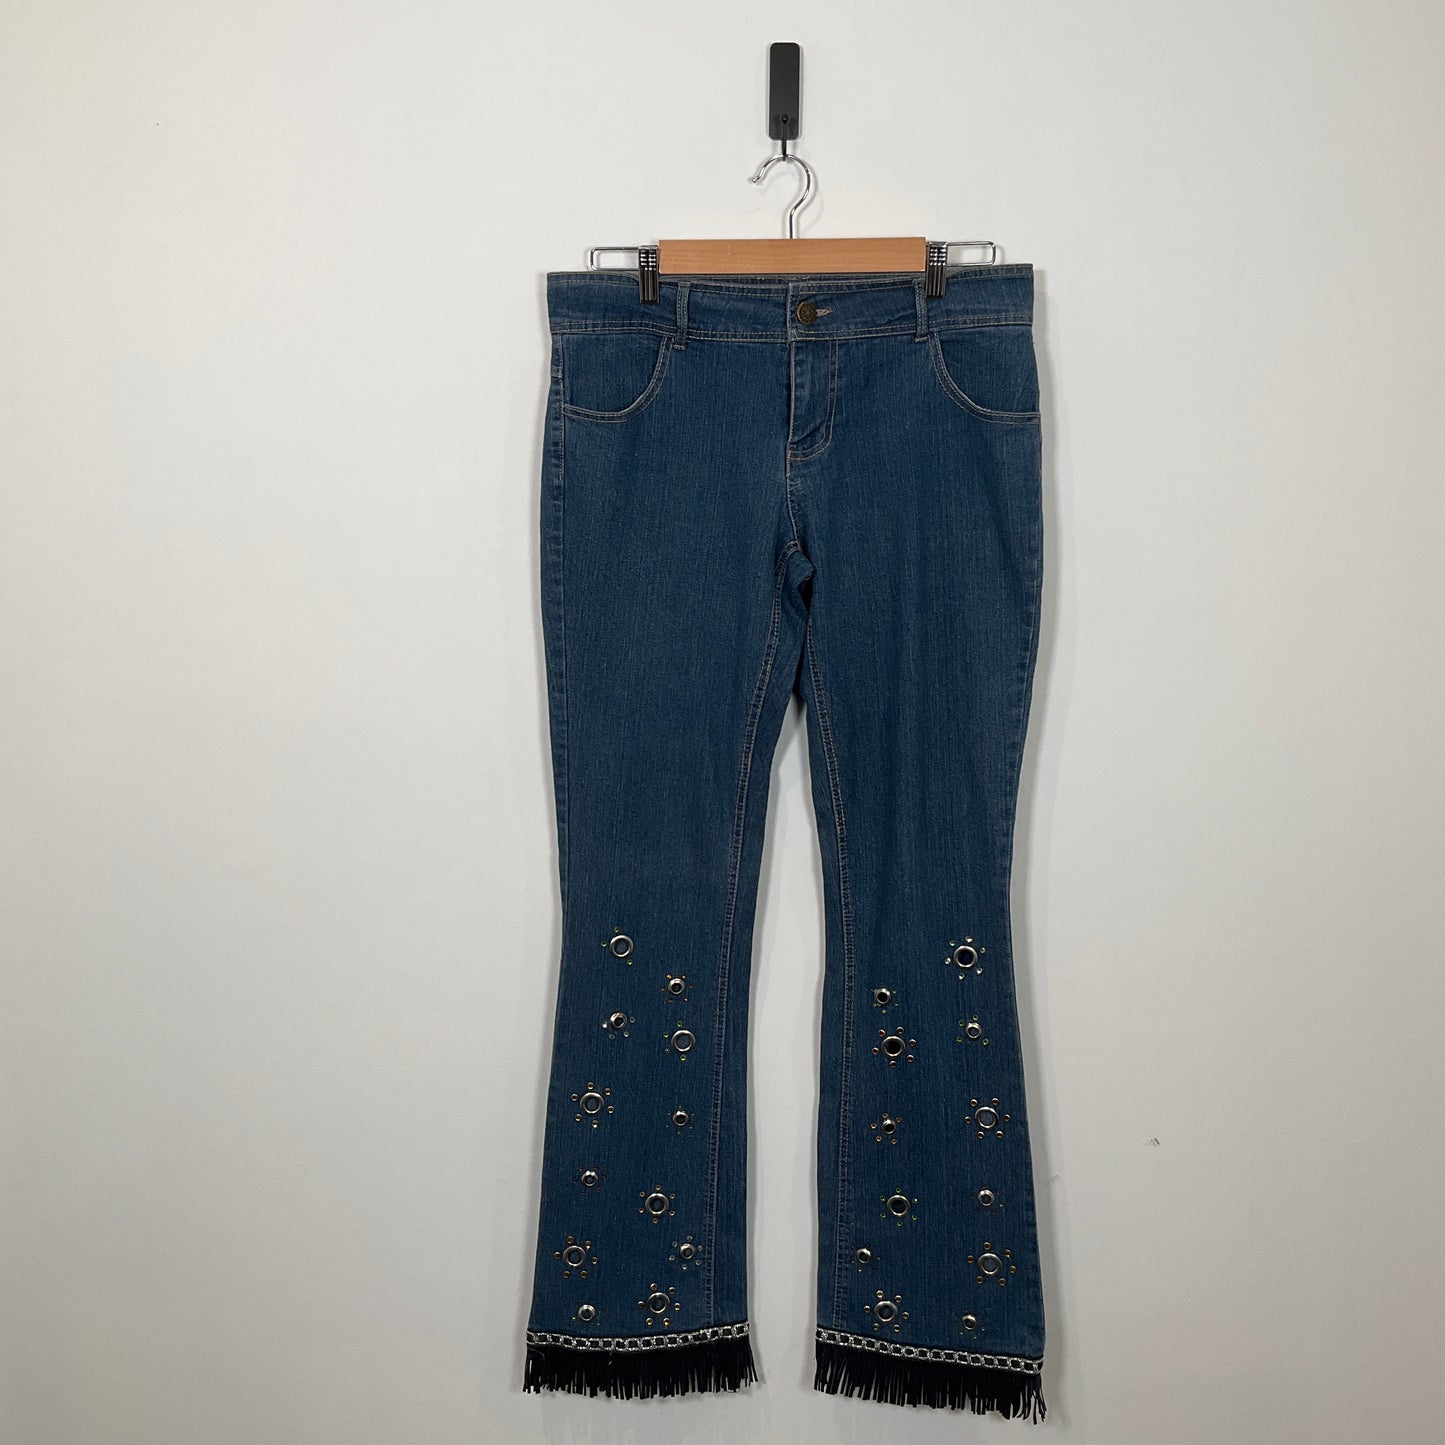 inSync - Fashion Jeans